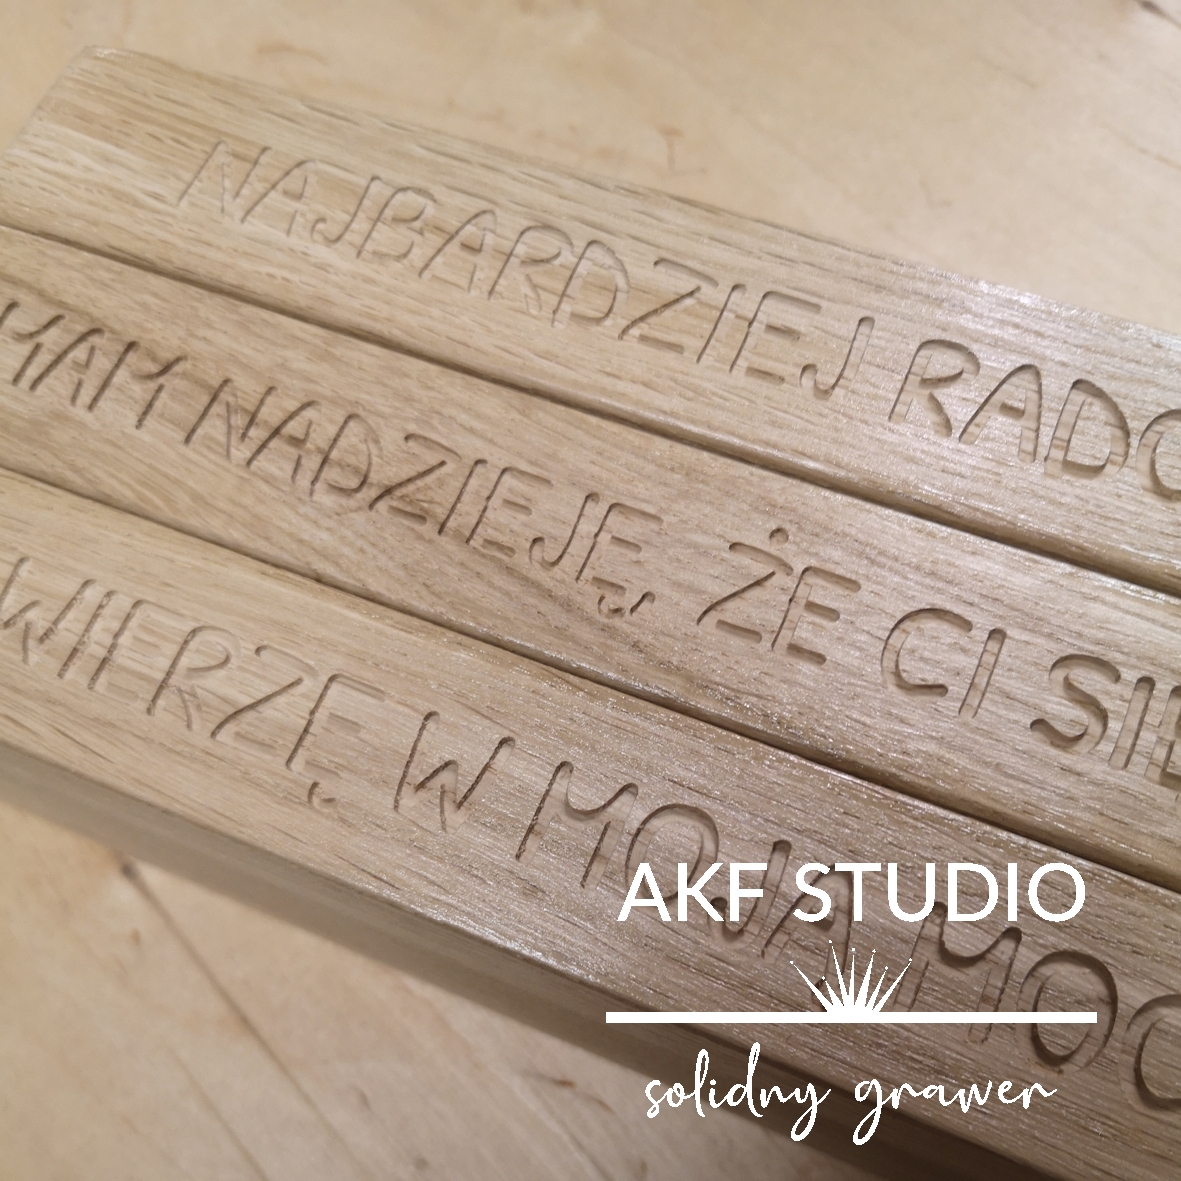 grawerowanie-mechaniczne-w-drewnie-napisy-logo-drewniane-akf-2